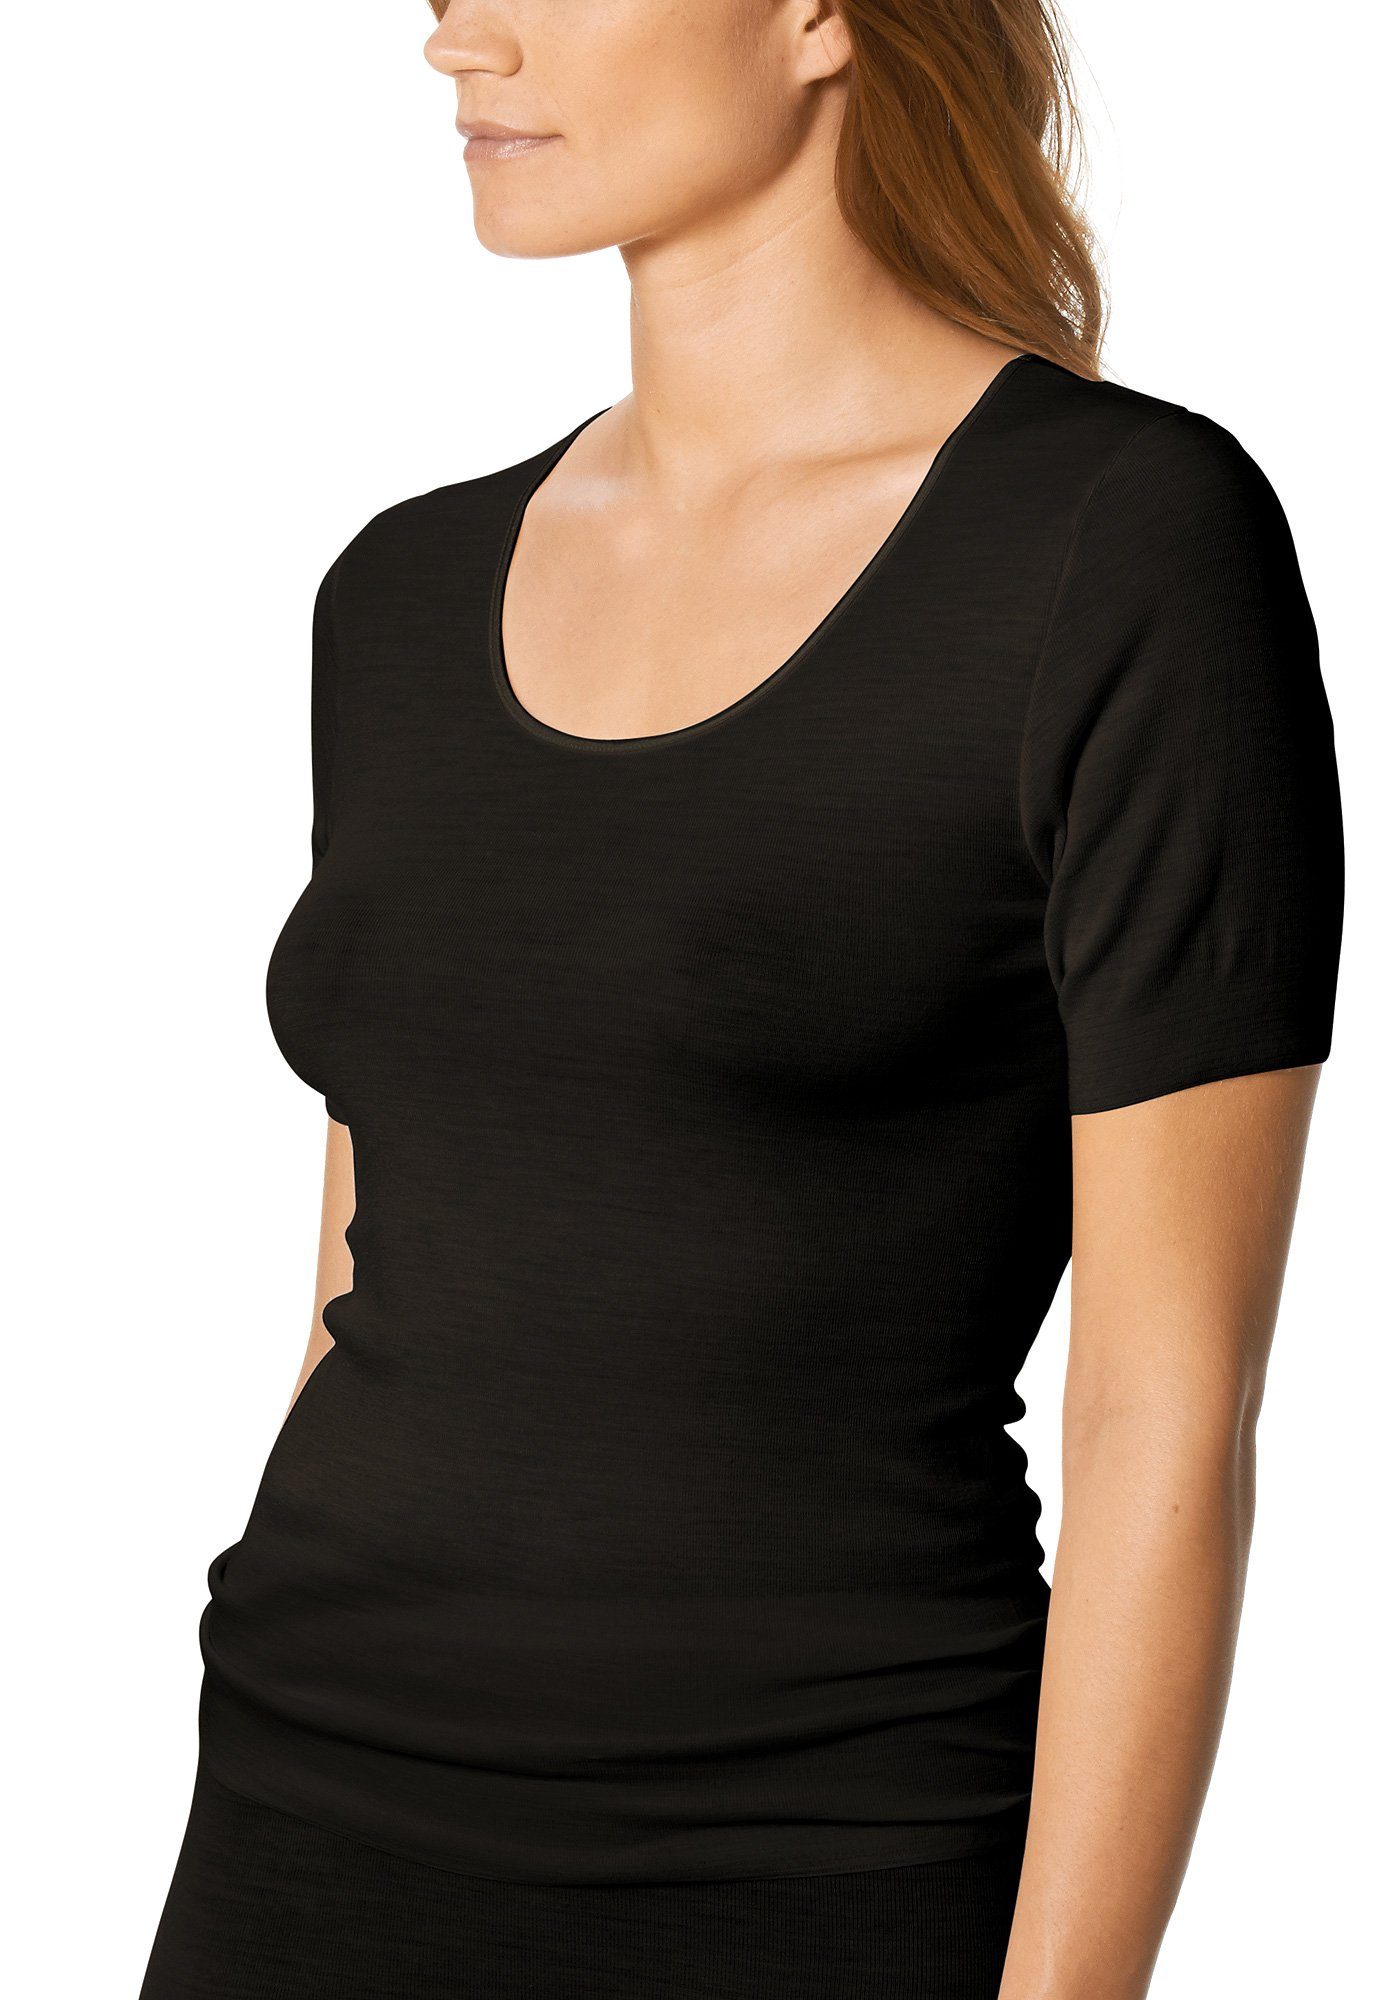 Mey Thermounterhemd Stück, wärmend Serie 1-St., Mey 66576 Shirt Stück) schwarz (1 1 Exquisite